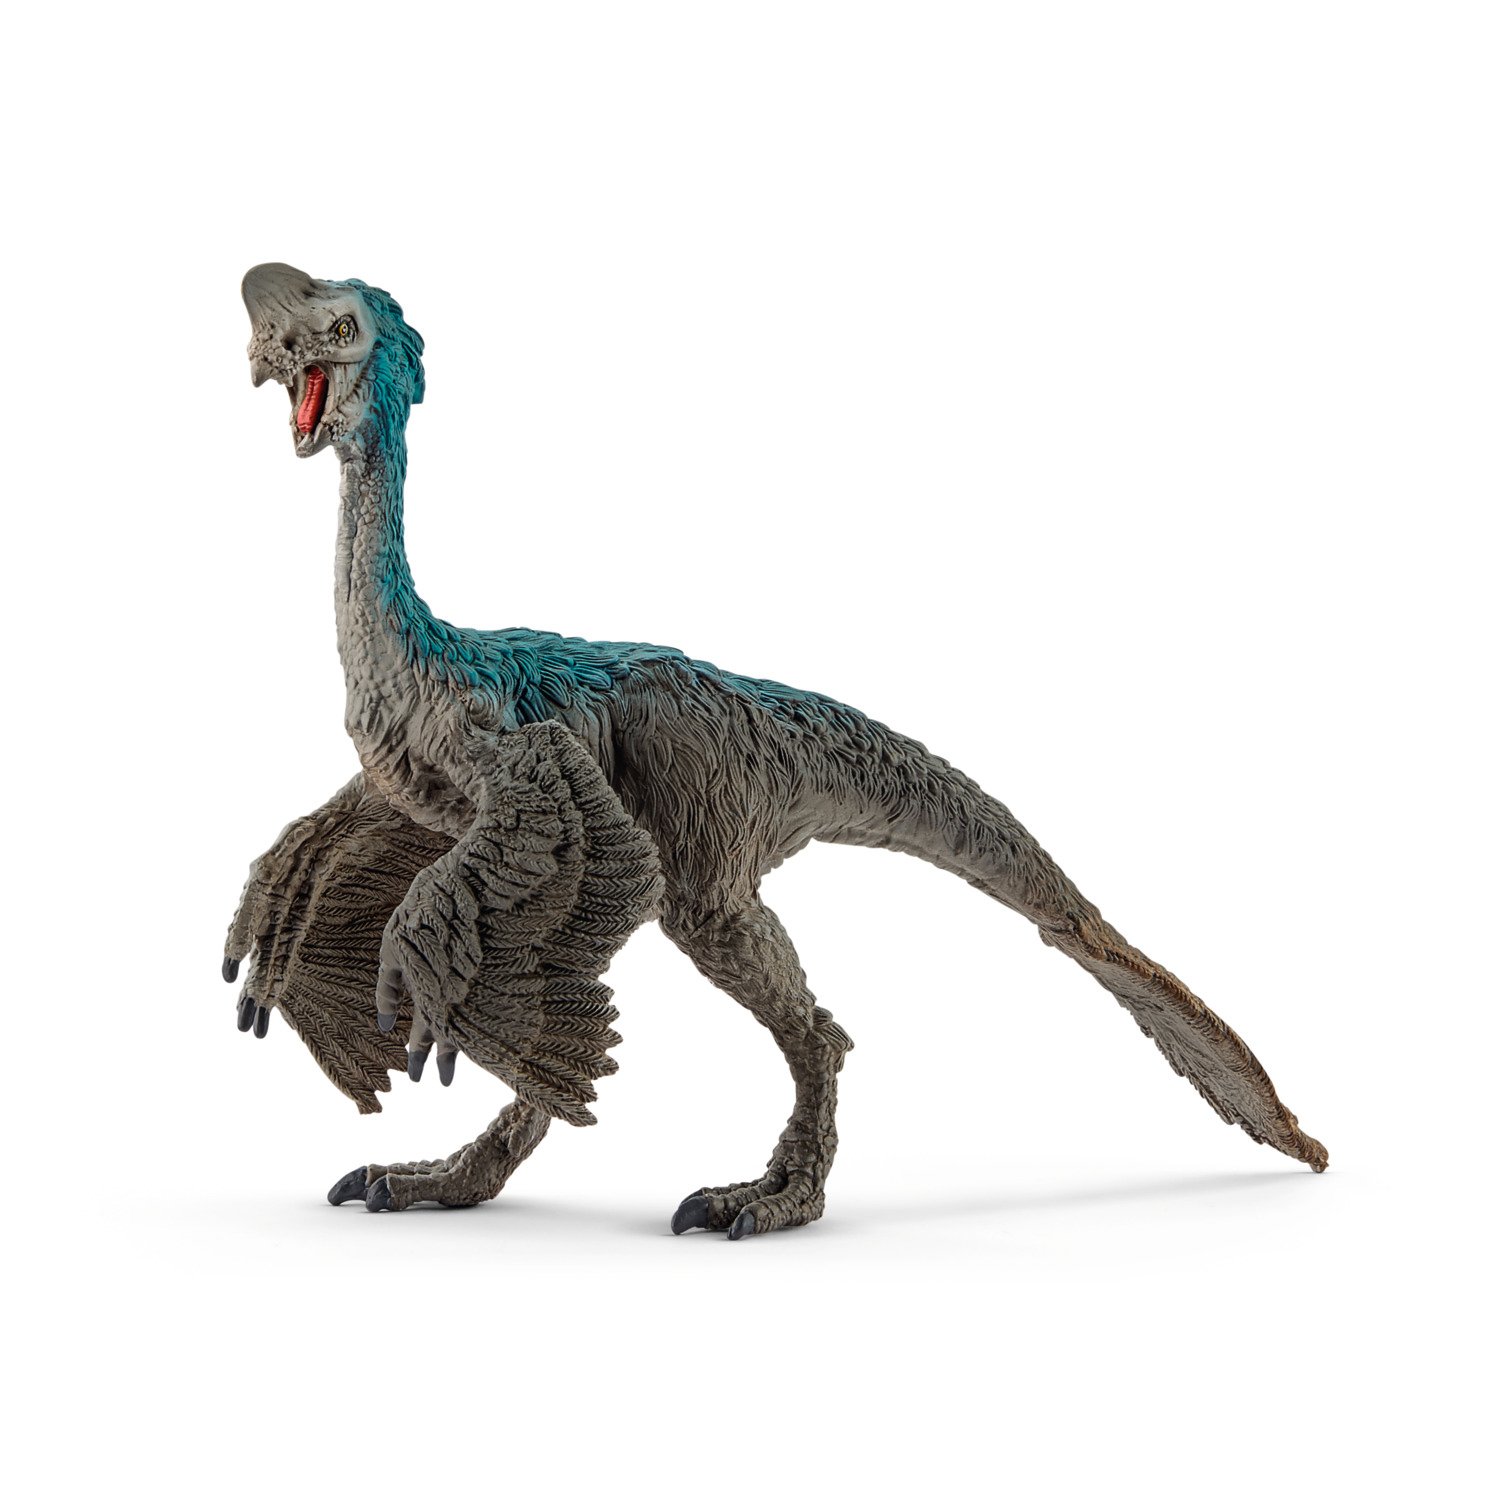 Schleich Dinosaurs Oviraptor Toy Figurine - image 1 of 2